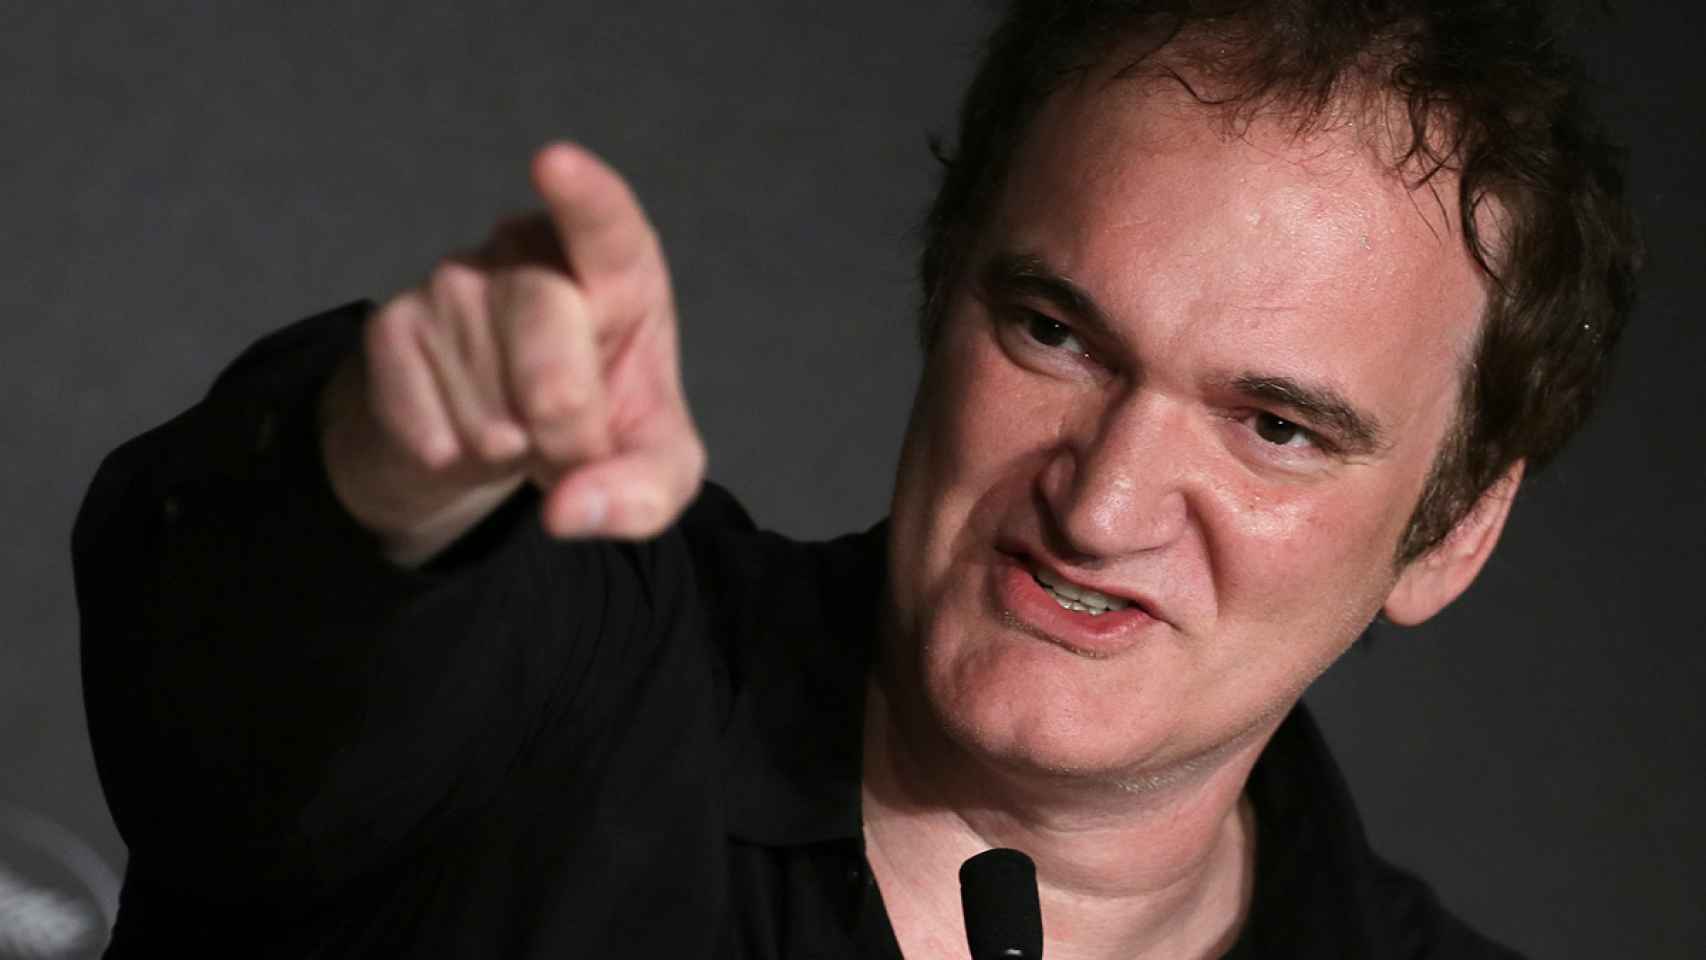 Quentin Tarantino asustaba a sus vecinos de pequeño